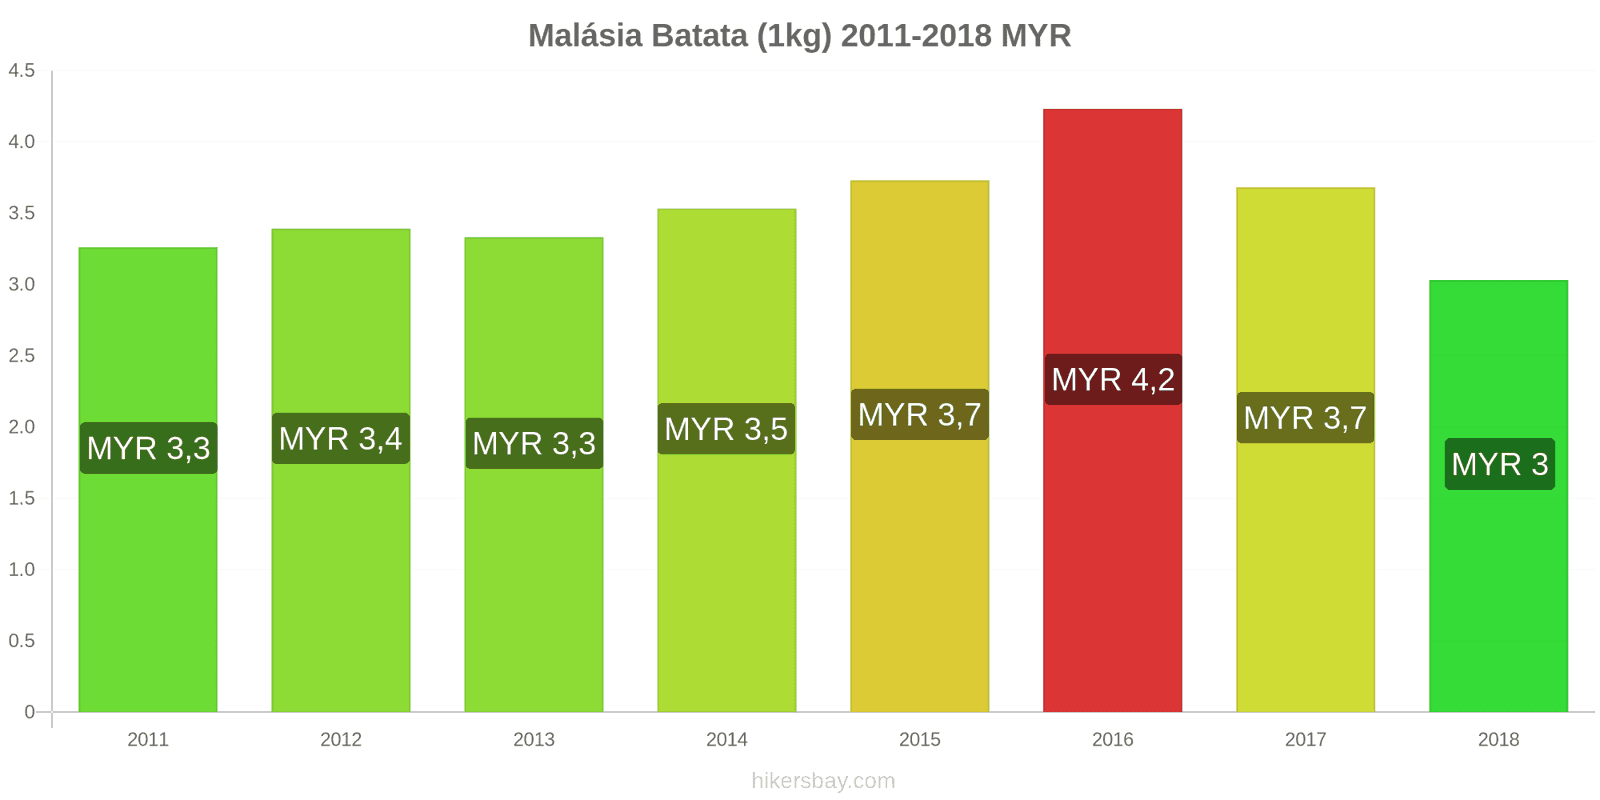 Malásia mudanças de preços Batatas (1kg) hikersbay.com